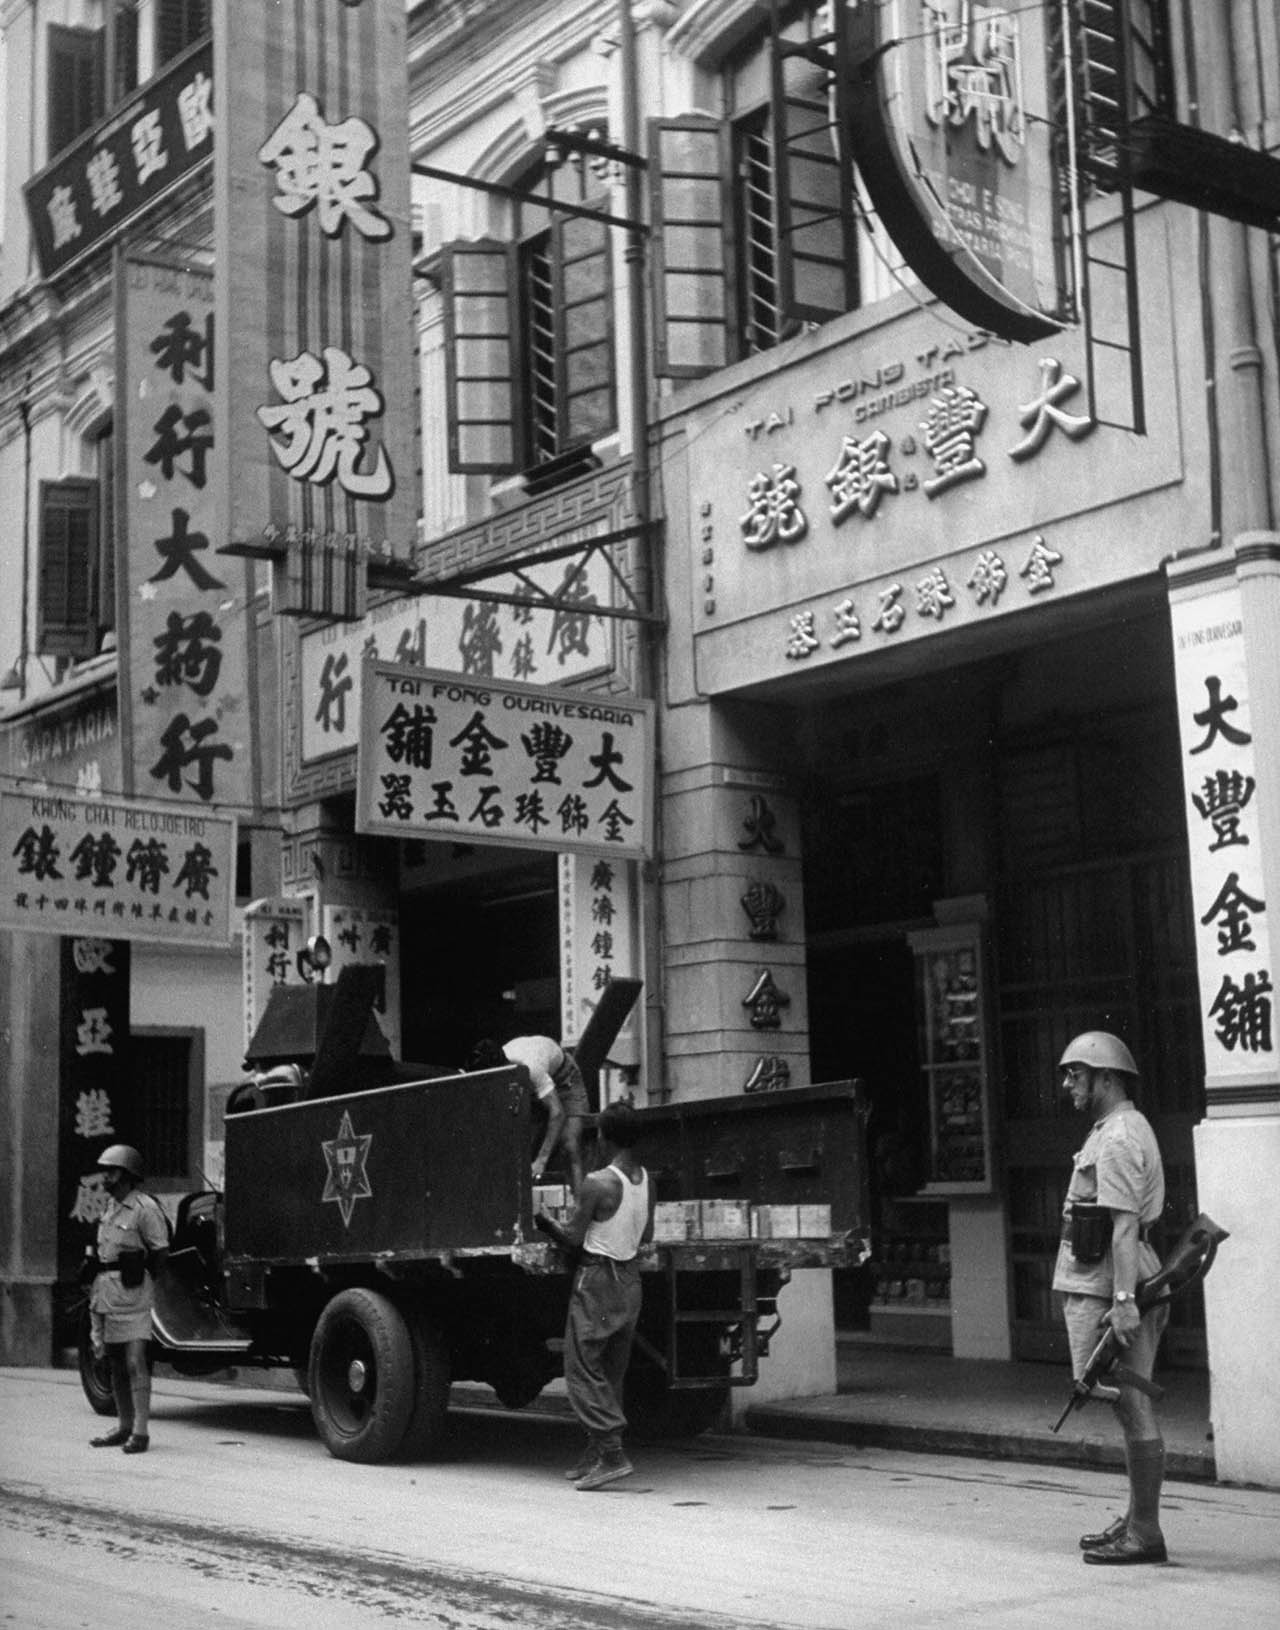 中国的摄影集1947~1949民生老旧照片及PDF素材-Jack Birns 杰克伯恩斯拍摄